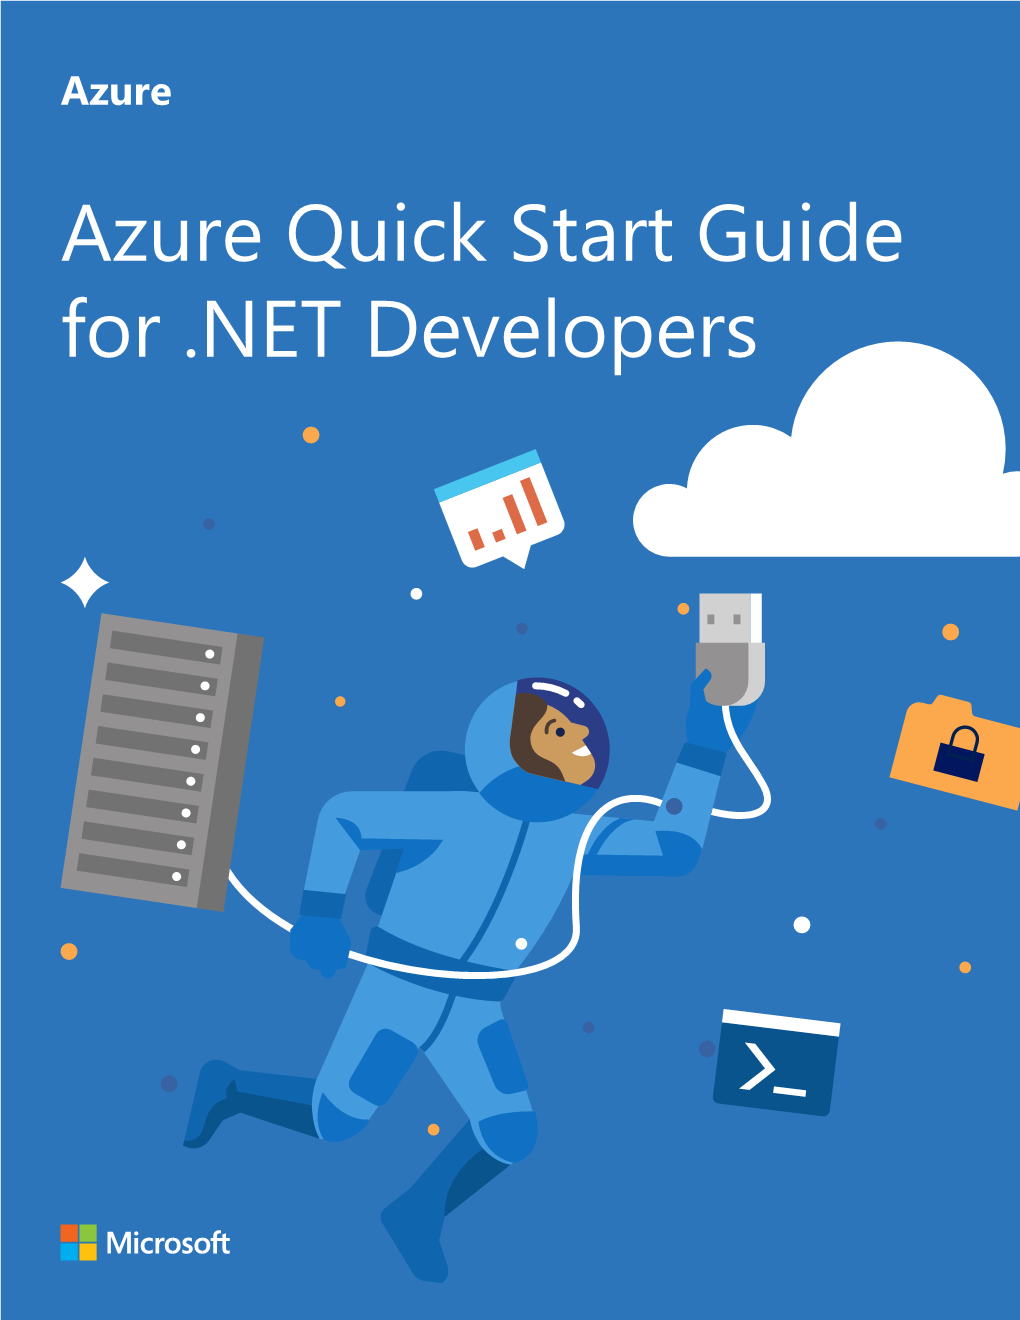 Azure Quick Start Guide for .NET Developers